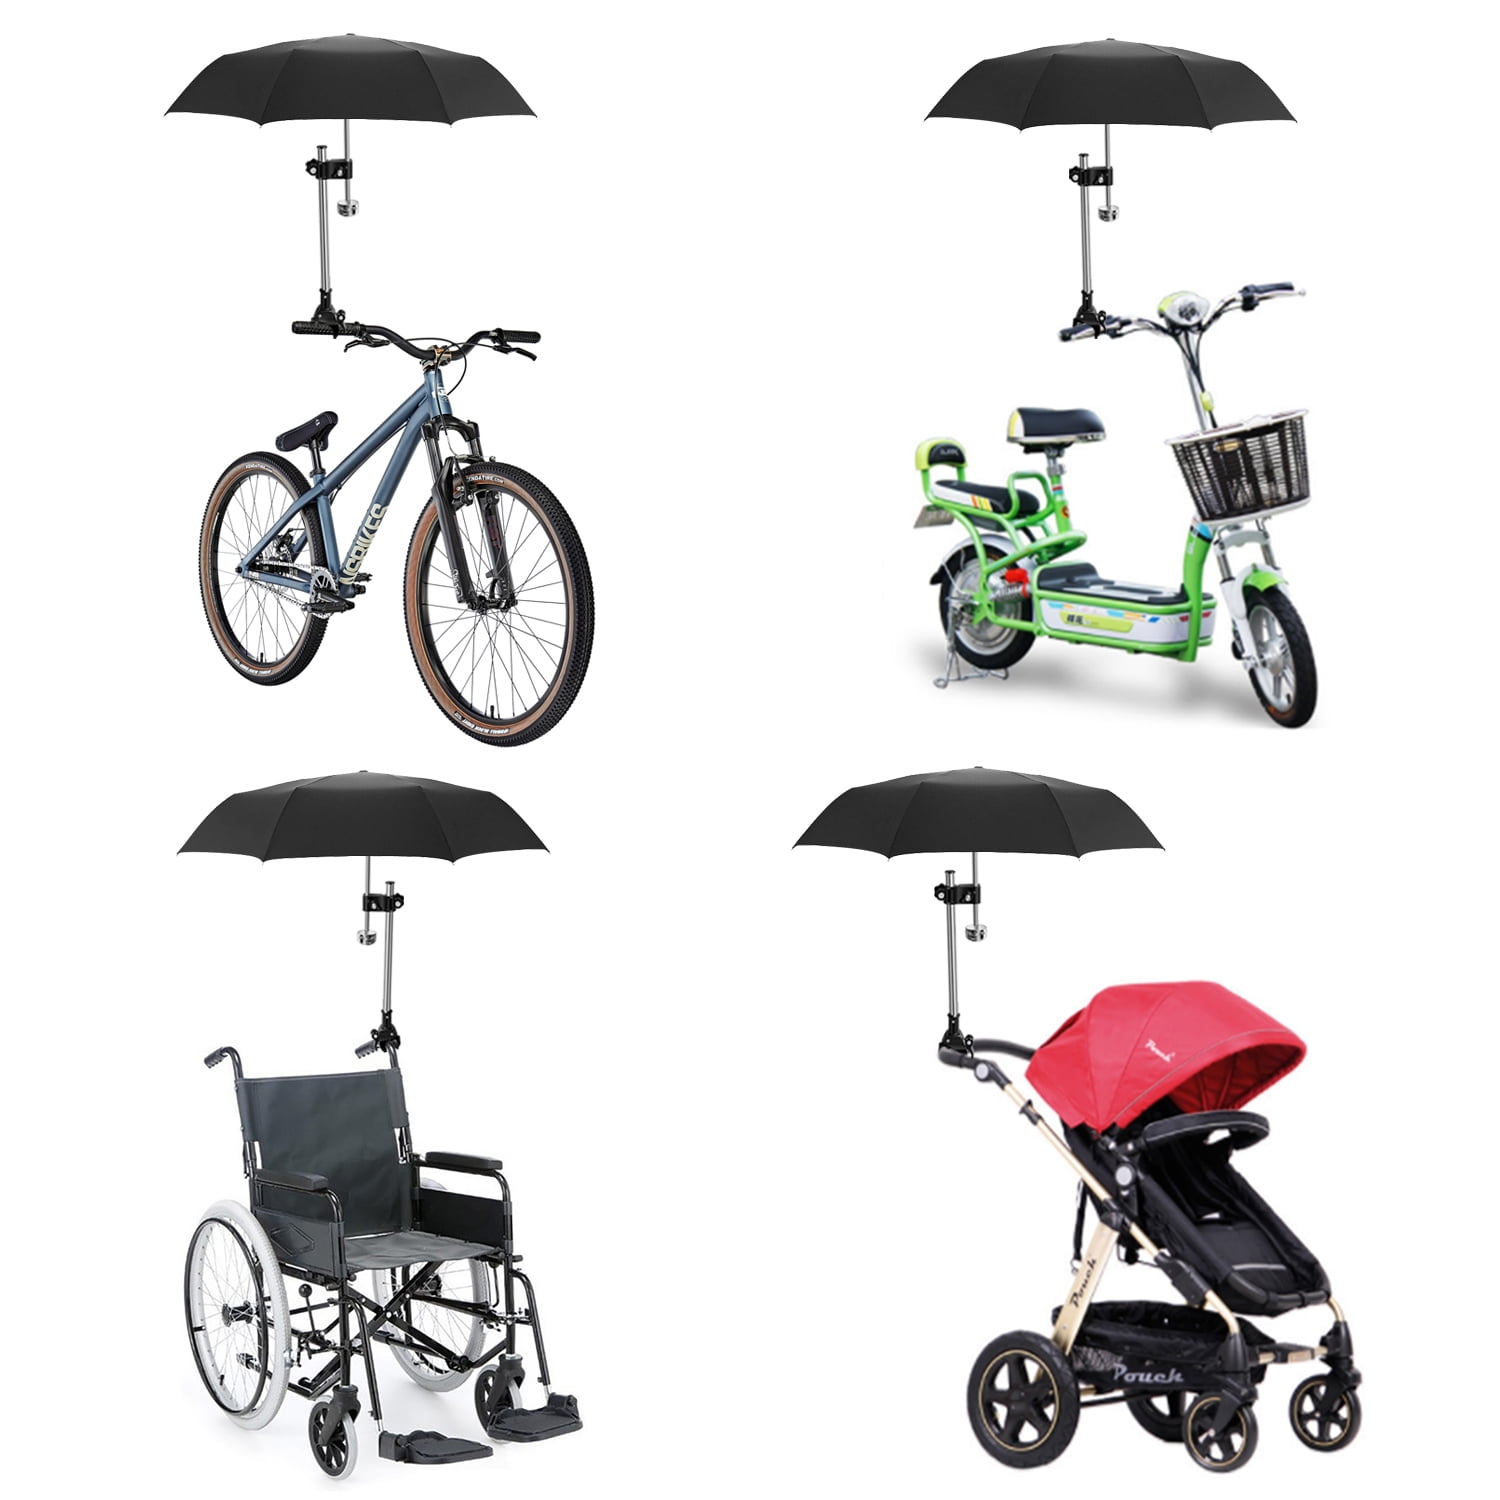 Adjustable 0.59-0.98'' Umbrella Handlebar Stretch Stand Holder Stroller Bicycle 